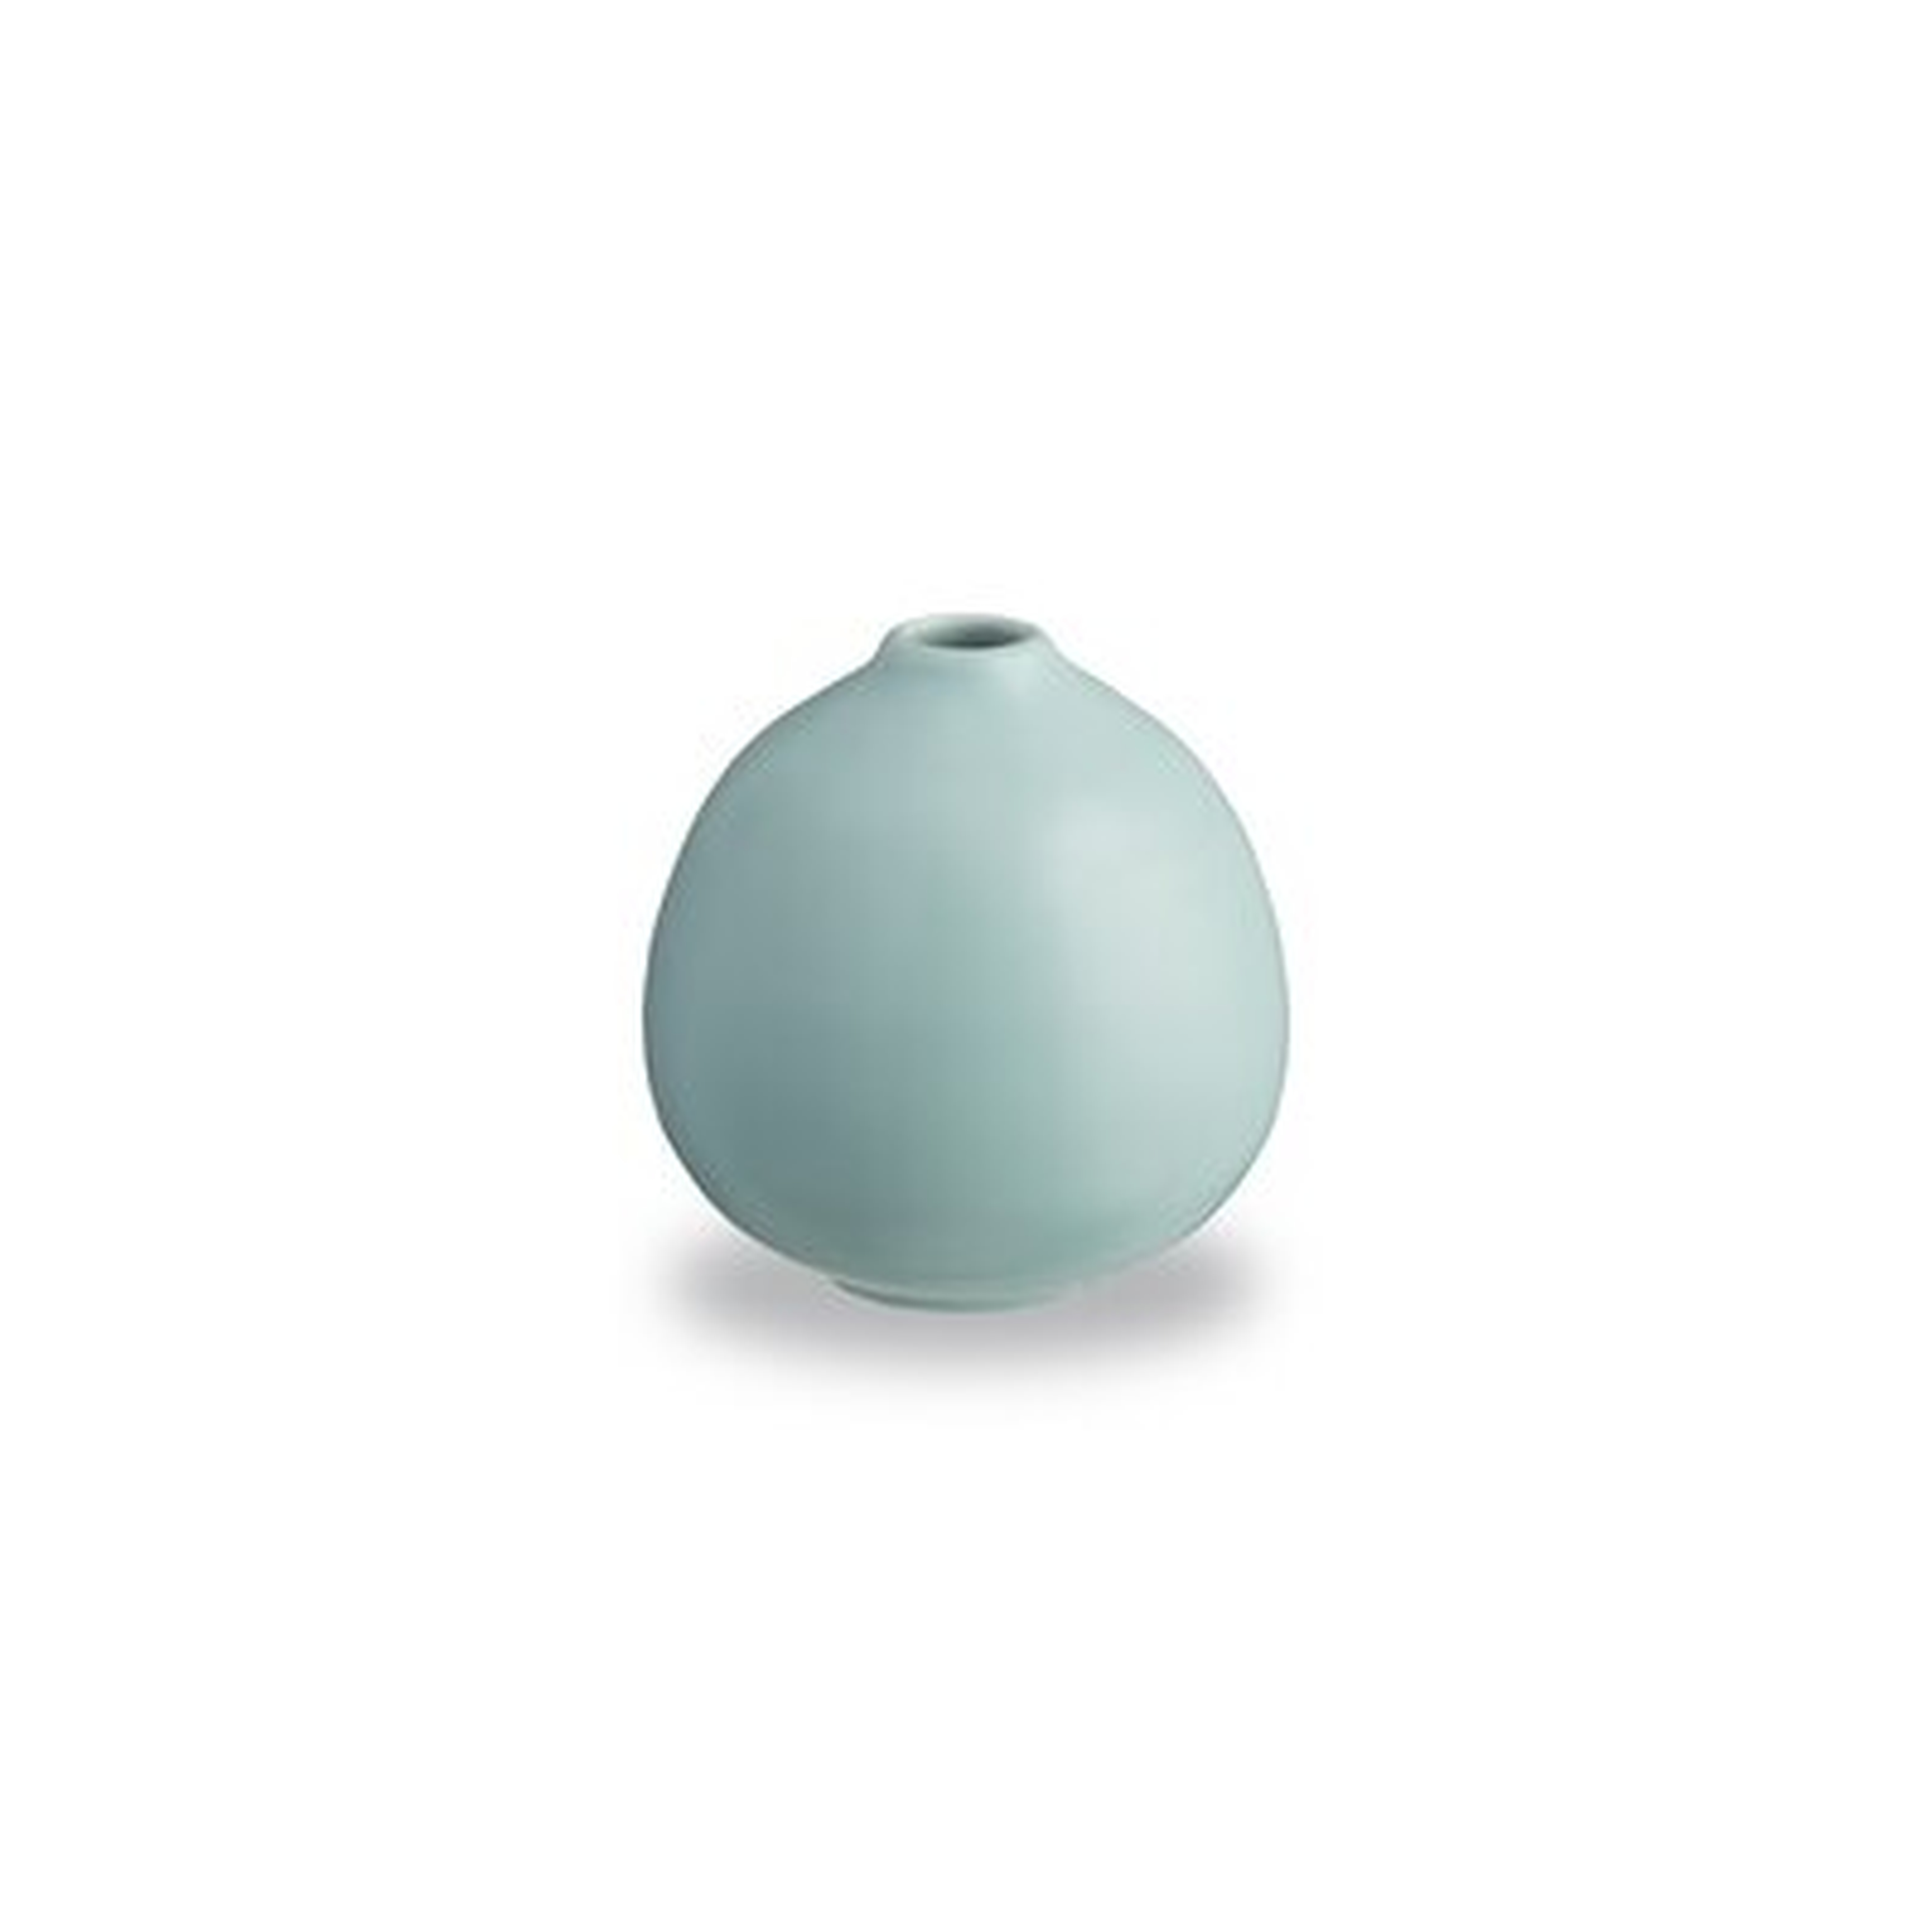 Bloom 4" Ceramic Table Vase - Wayfair